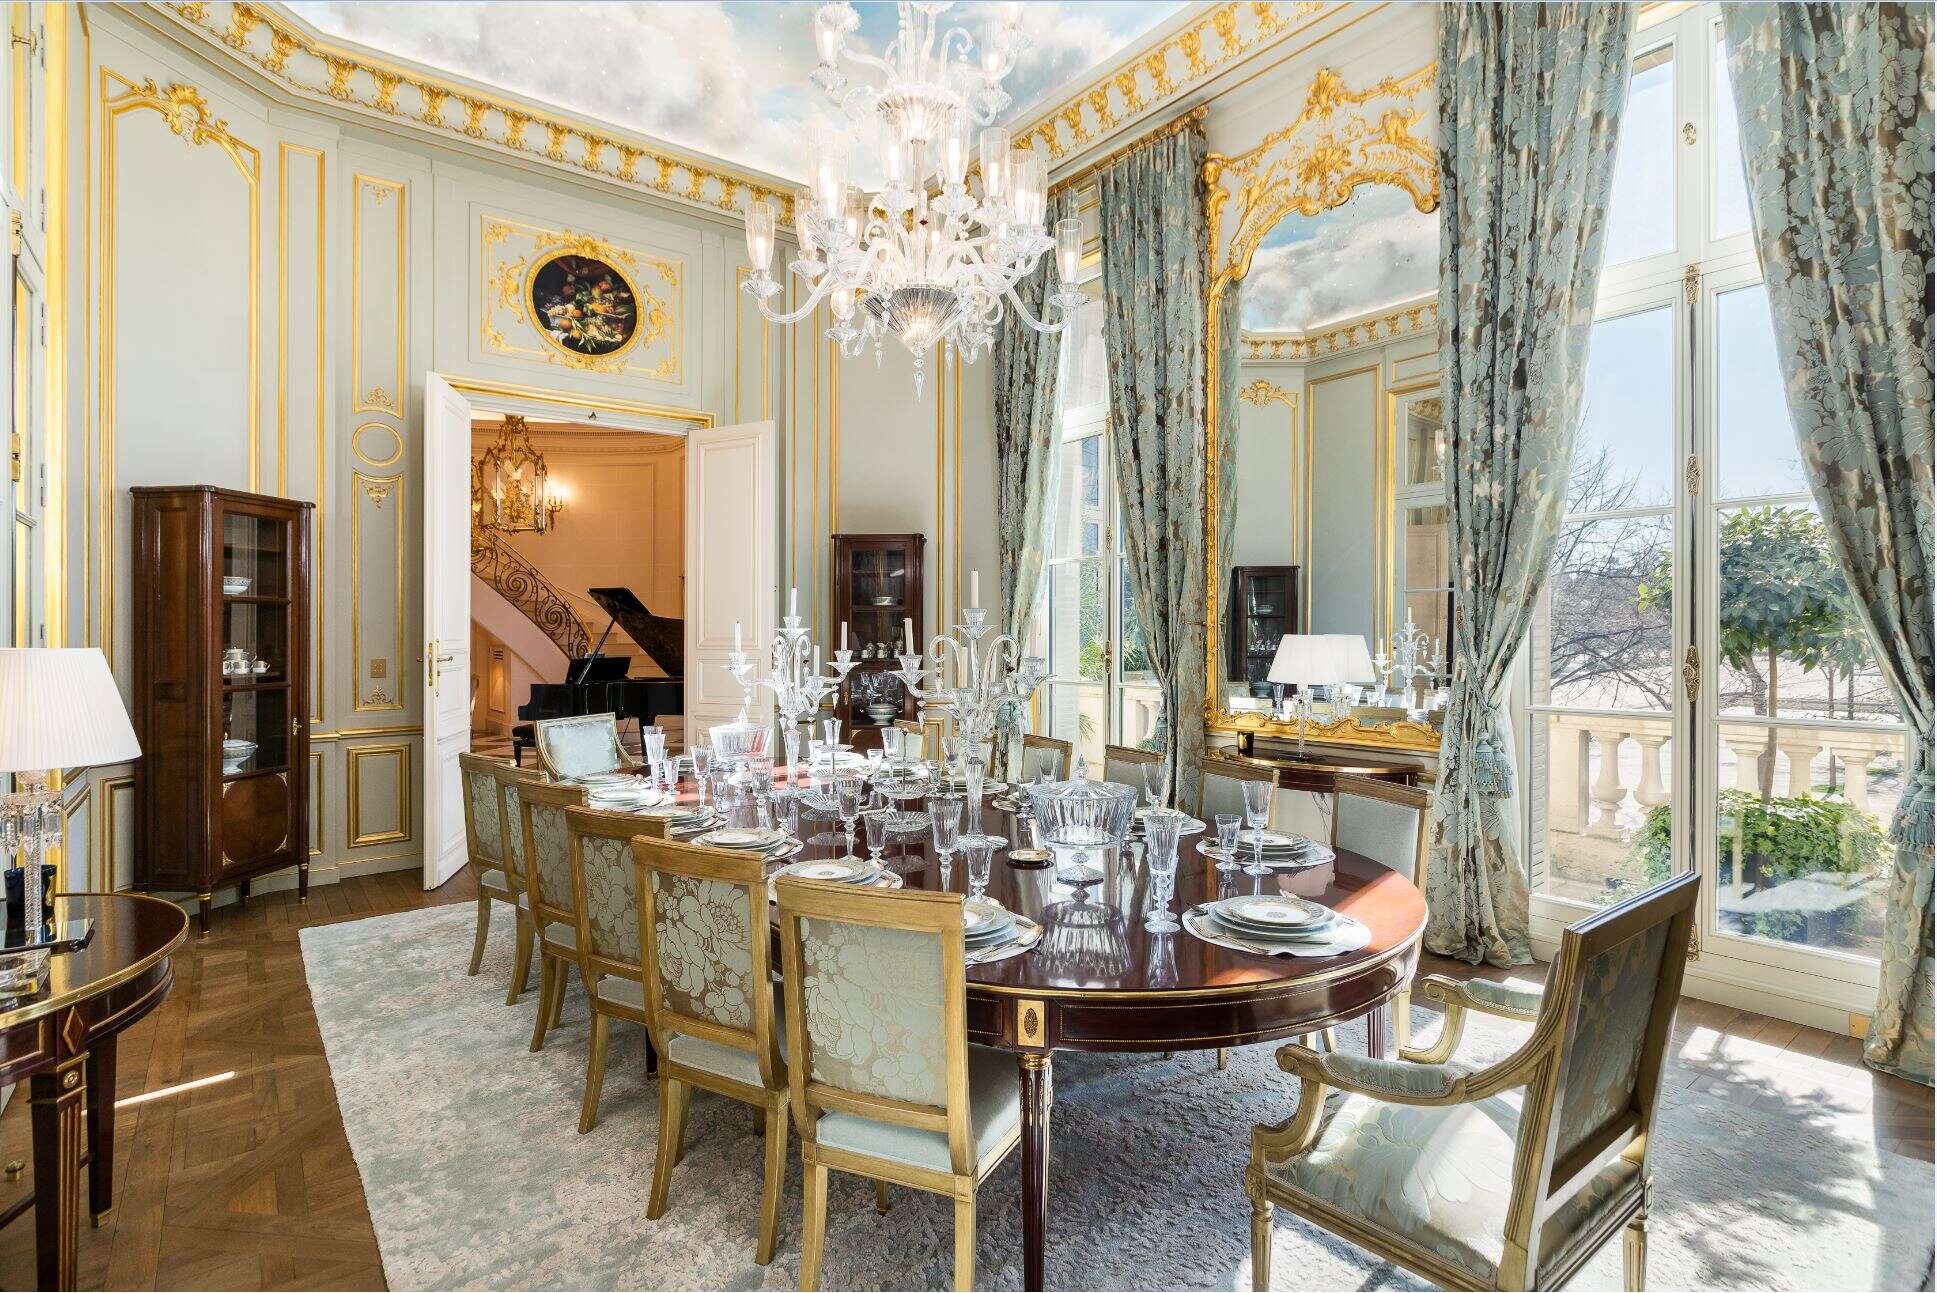 The dining room of Paris apartment